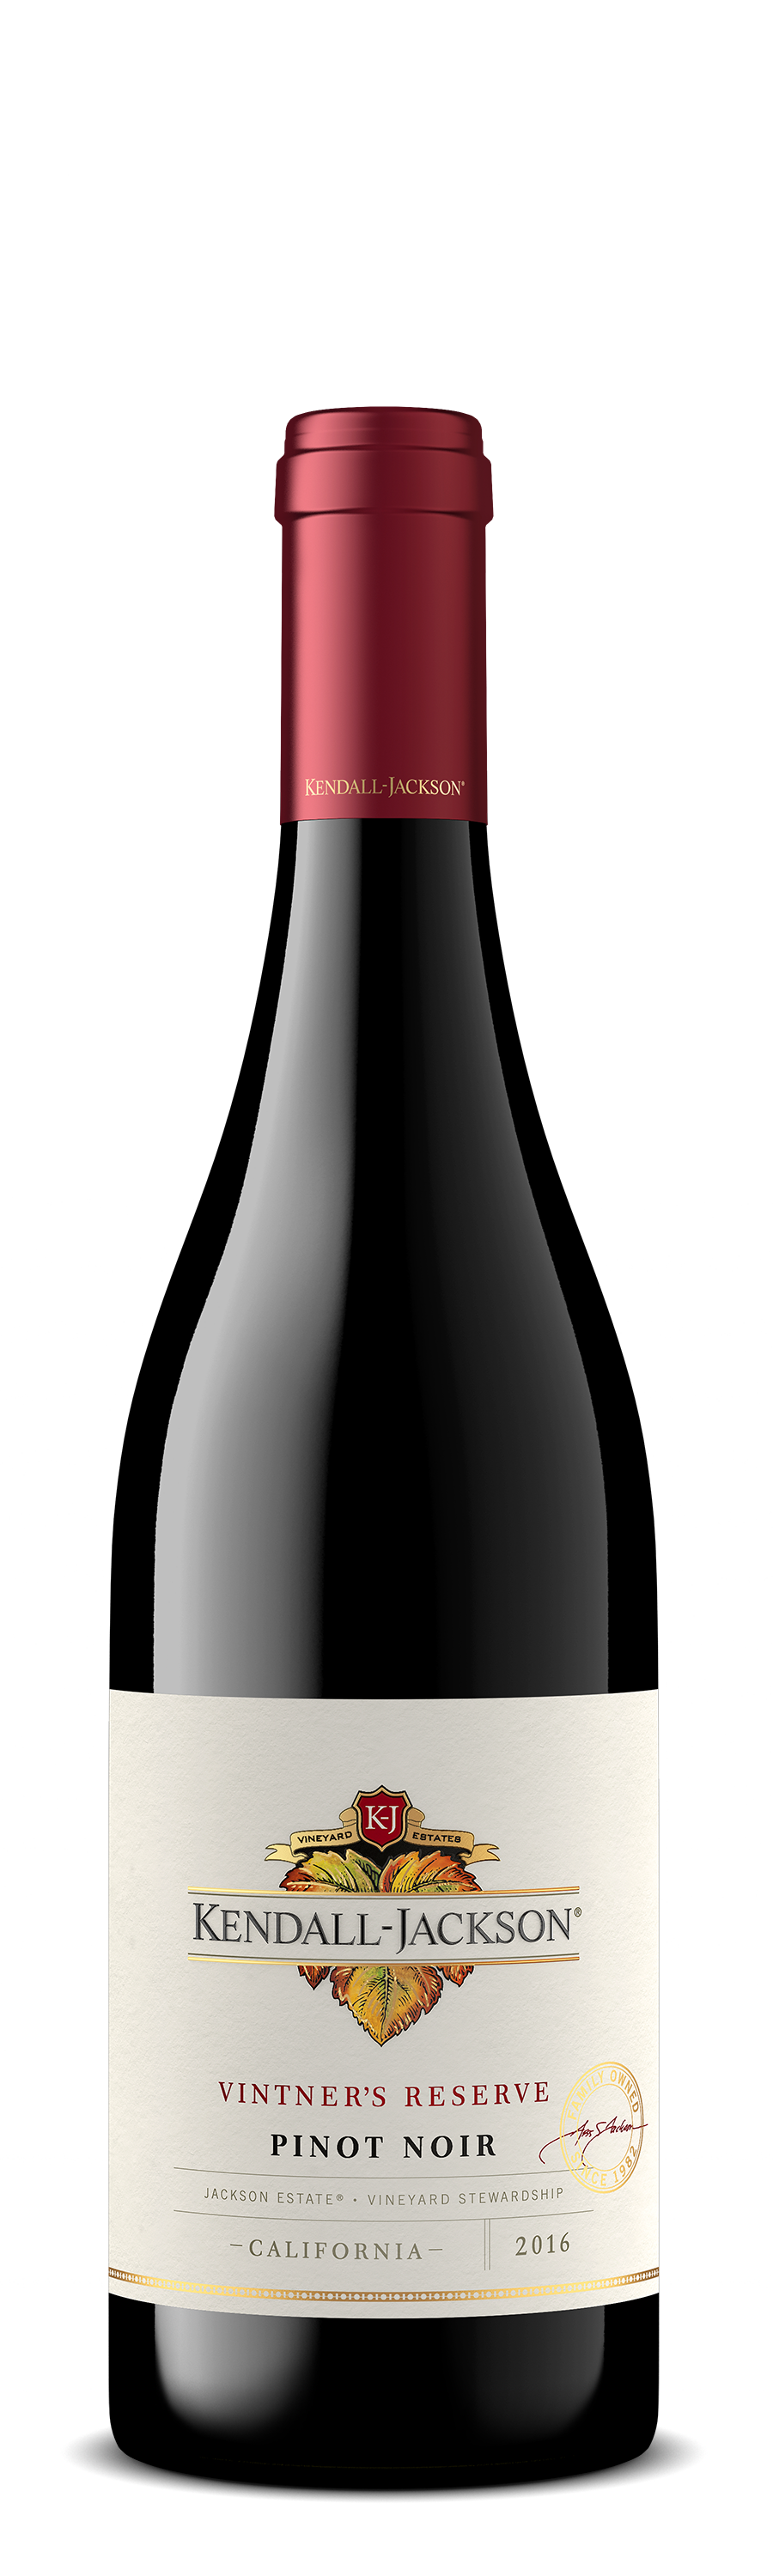 Kendall-Jackson Pinot Noir Vintner's Reserve 2019 750ml